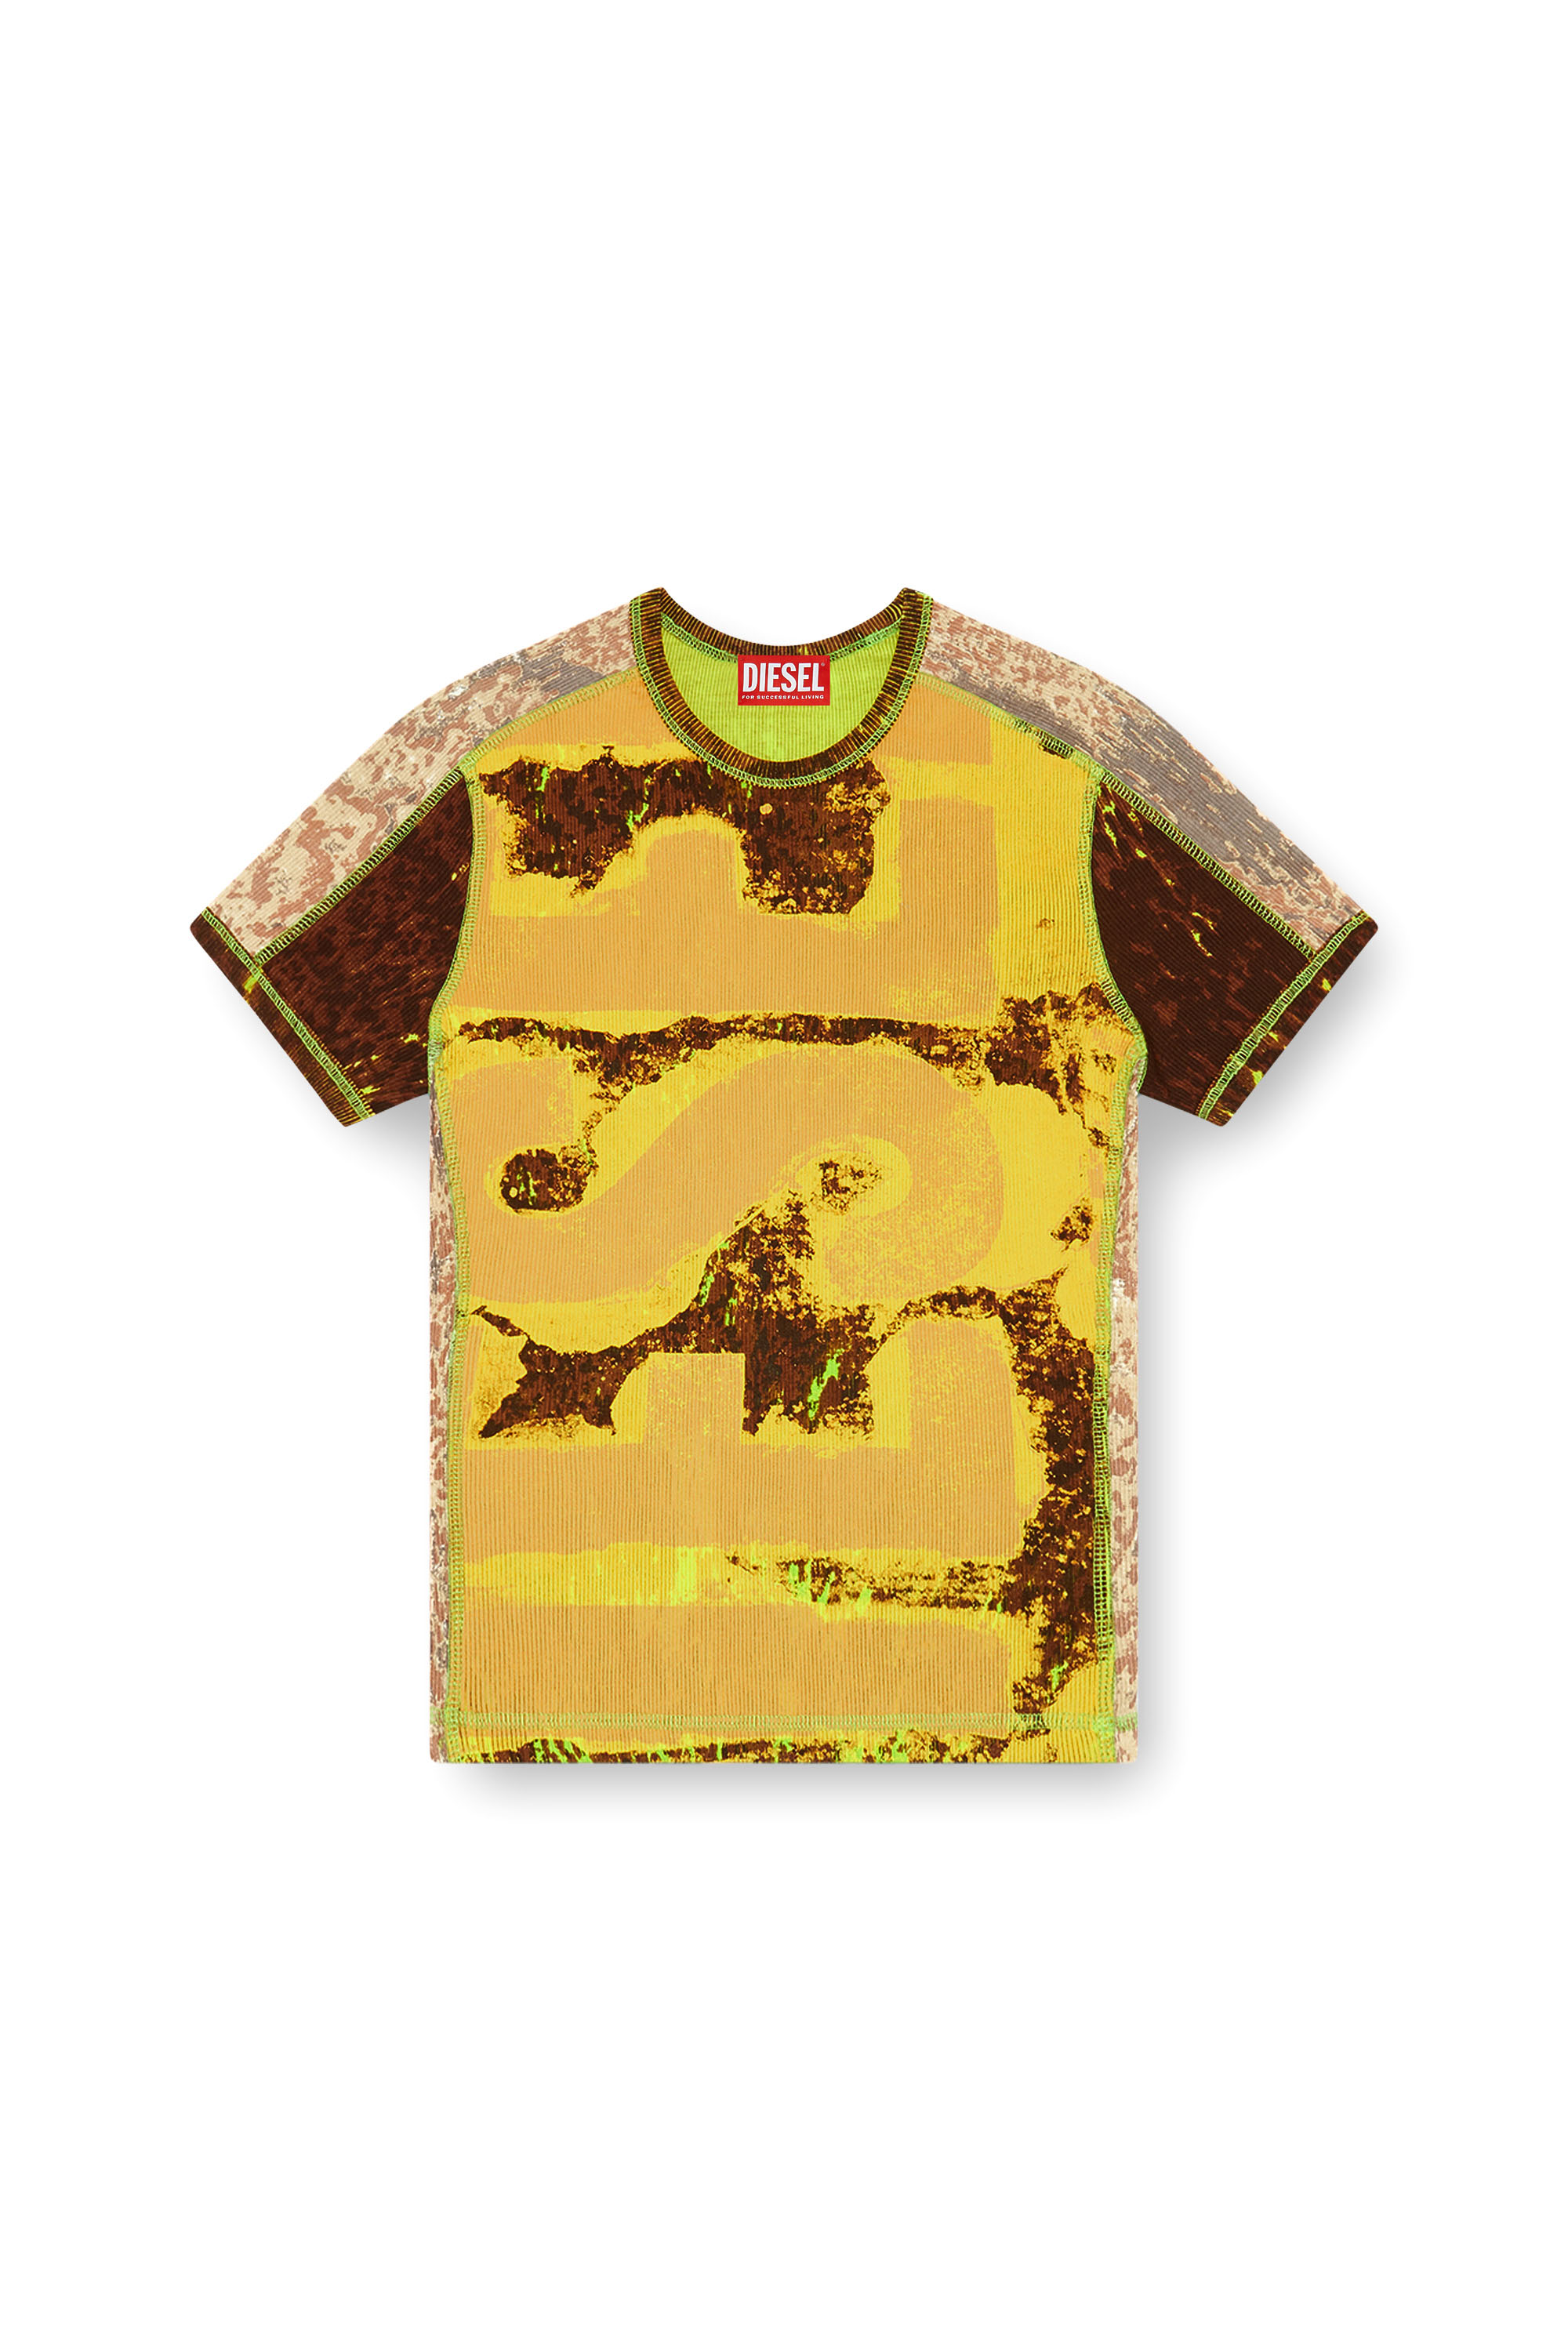 Diesel - T-ELE-LONG-P5, Mujer Camiseta en canalé con estampado abstracto in Multicolor - Image 3